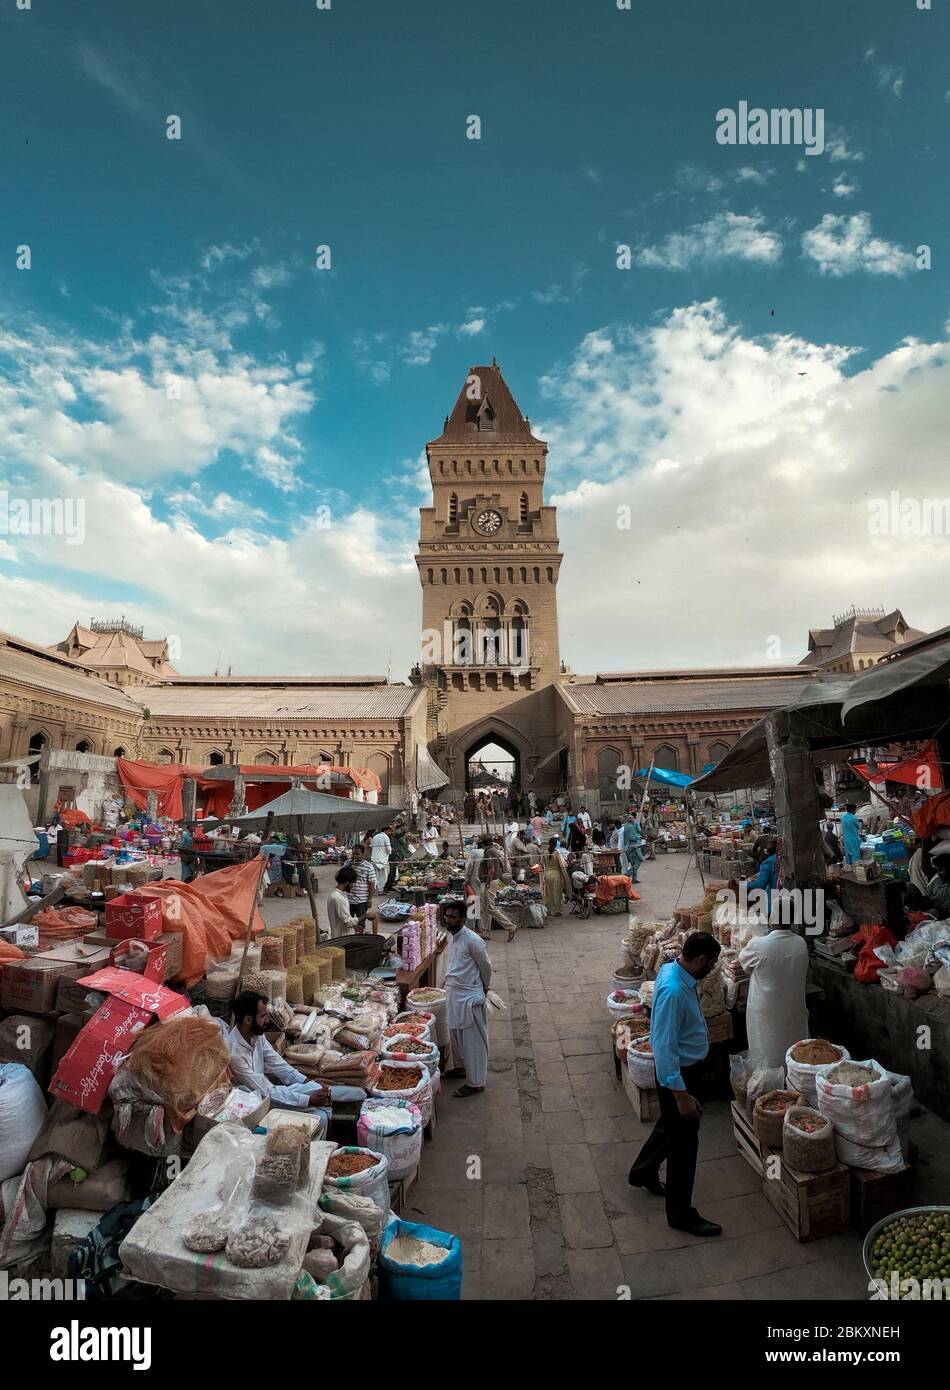 La belle architecture du marché de l'impératrice Karachi Bâtiment, UN site historique à Karachi, Sindh, Pakistan 09/09/2019 Banque D'Images